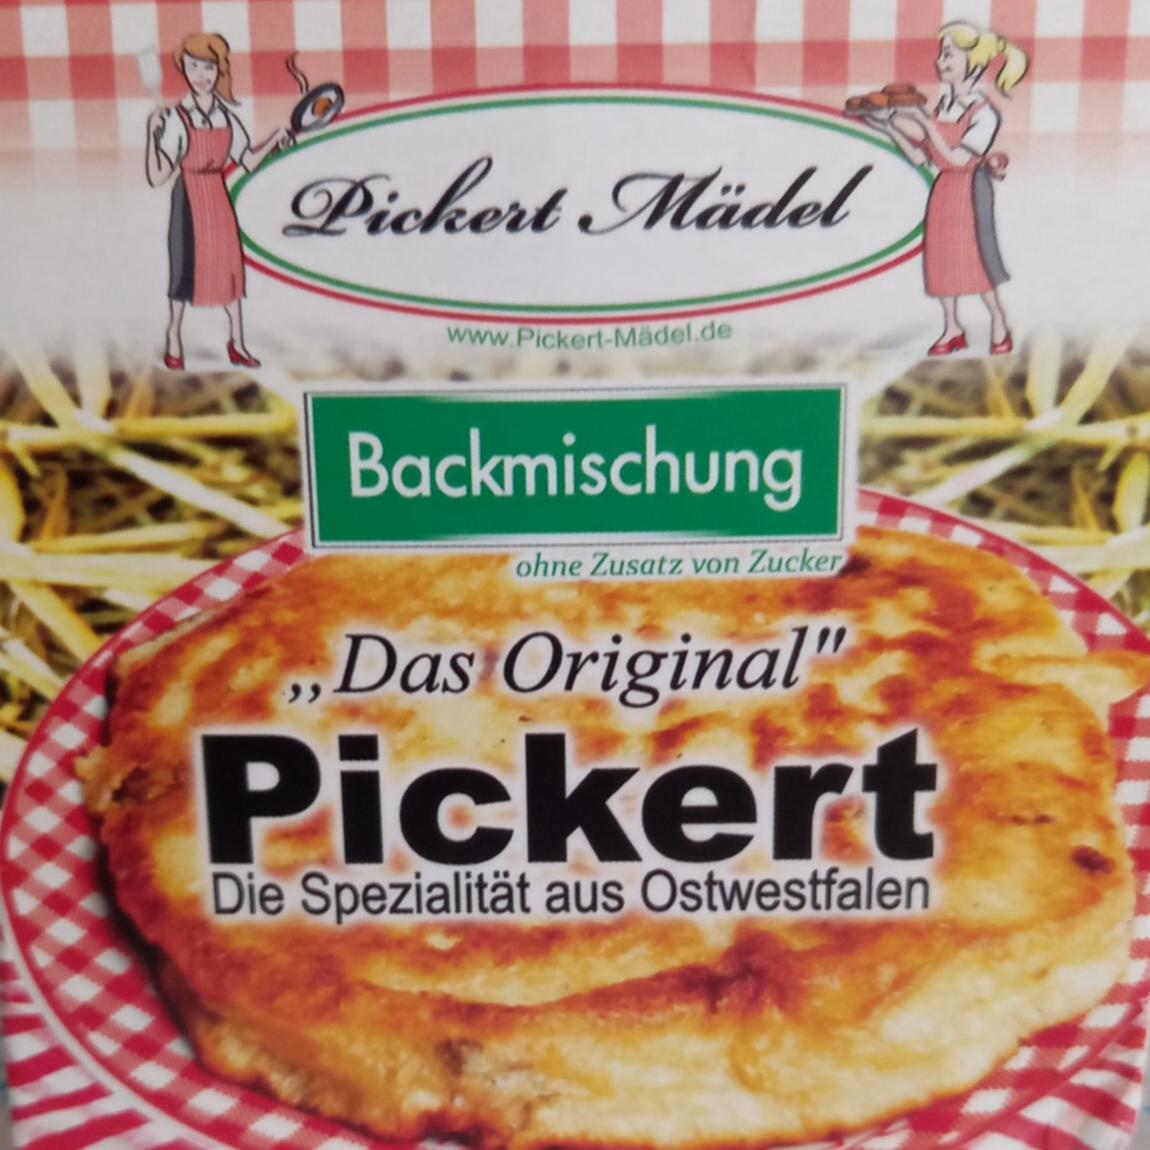 Das Original Pickert Backmischung Pickert Mädel - kalorie, kJ a ...